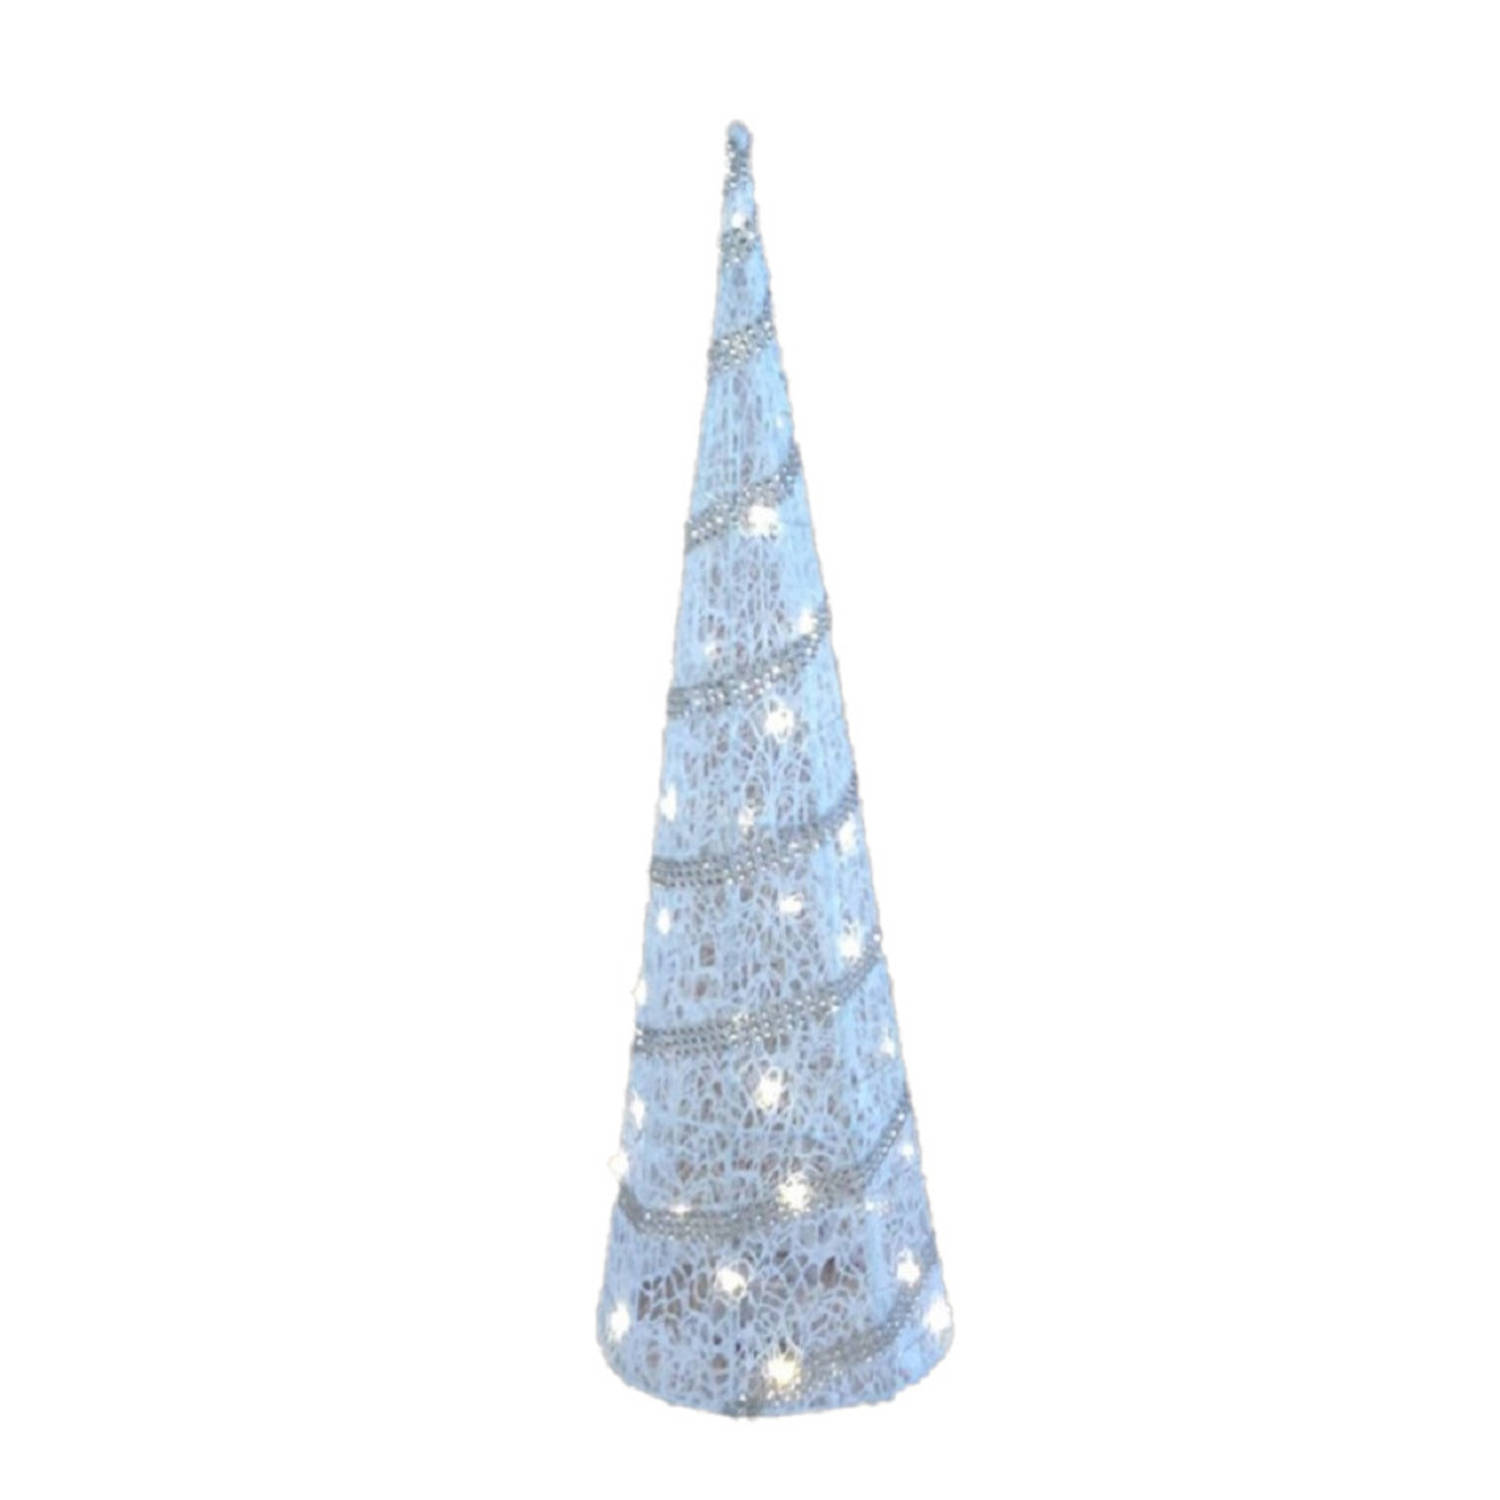 LED piramide kerstboom H59 cm wit kunststof kerstverlichting kerstverlichting figuur